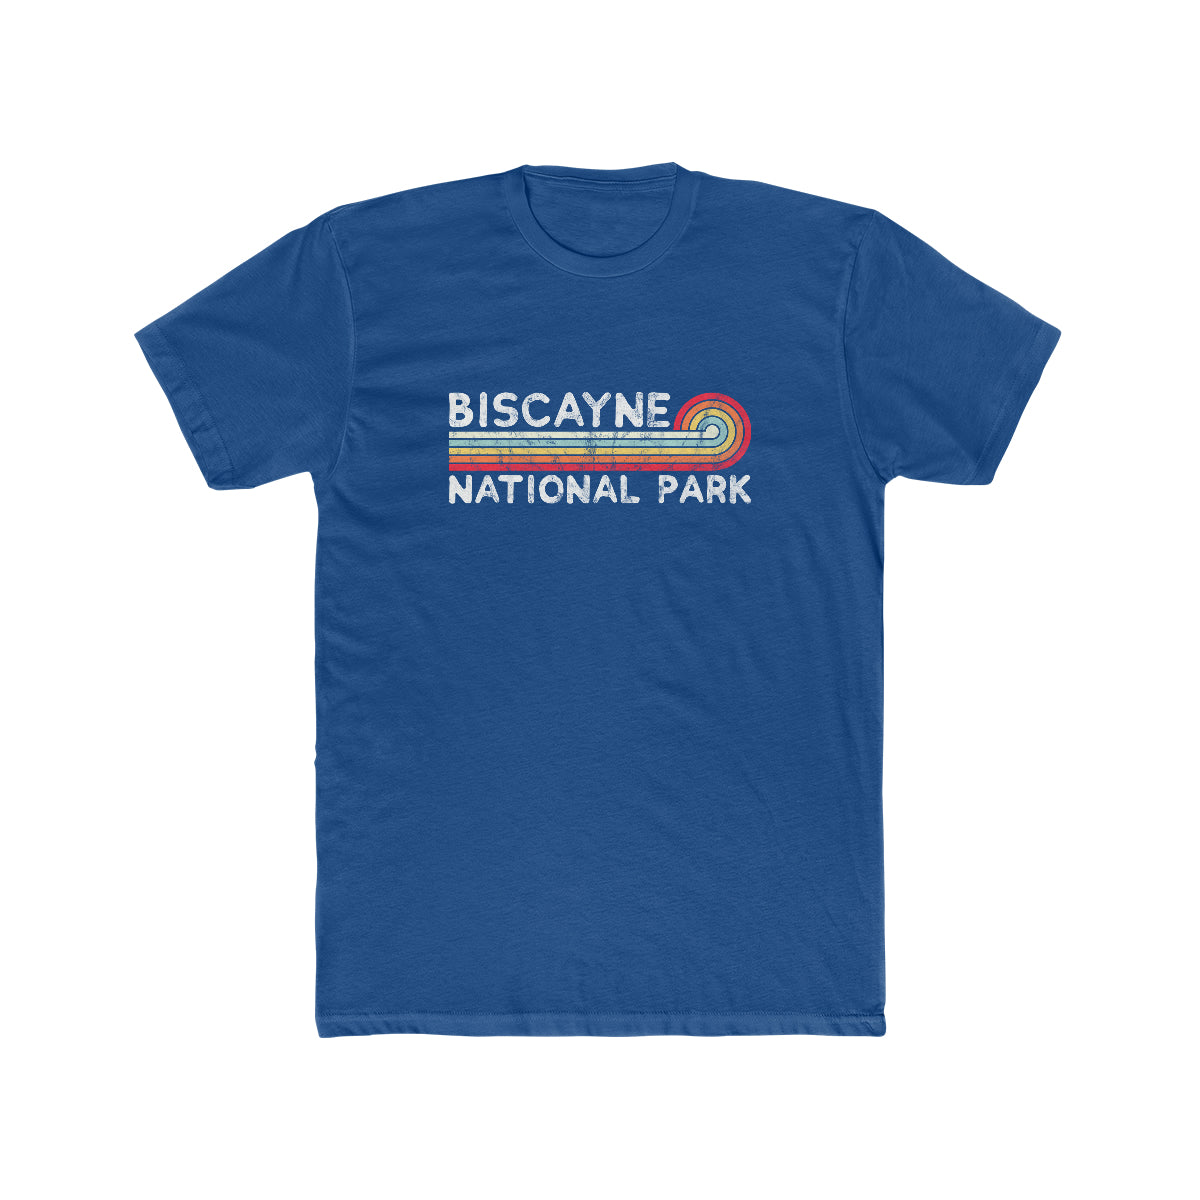 Biscayne National Park T-Shirt - Vintage Stretched Sunrise